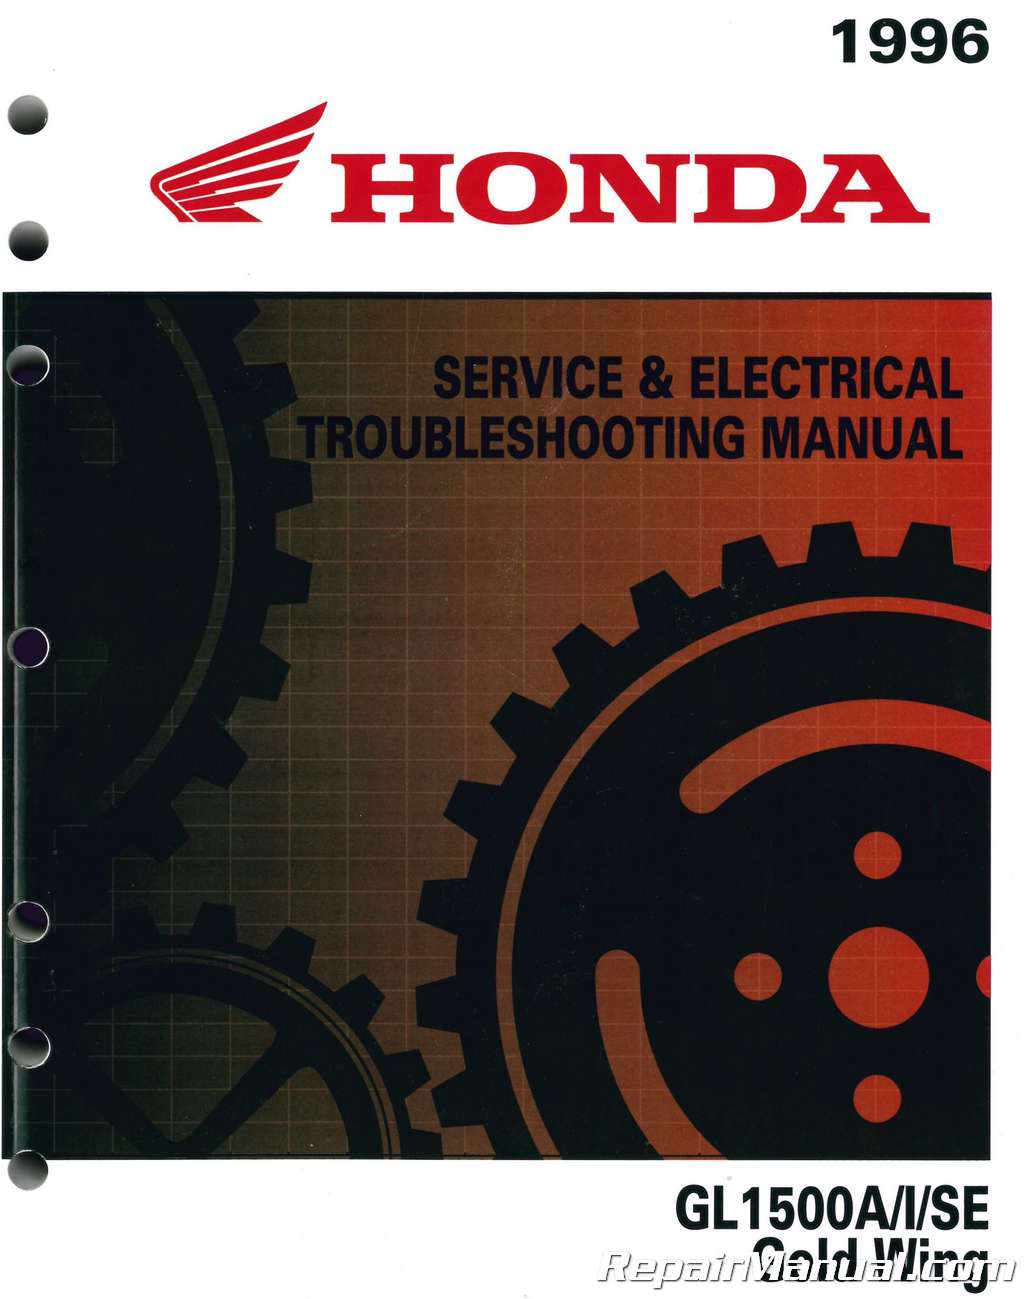 New Service Manual 1996 GL1500 Goldwing OEM Honda Shop Repair Book Binder #P16